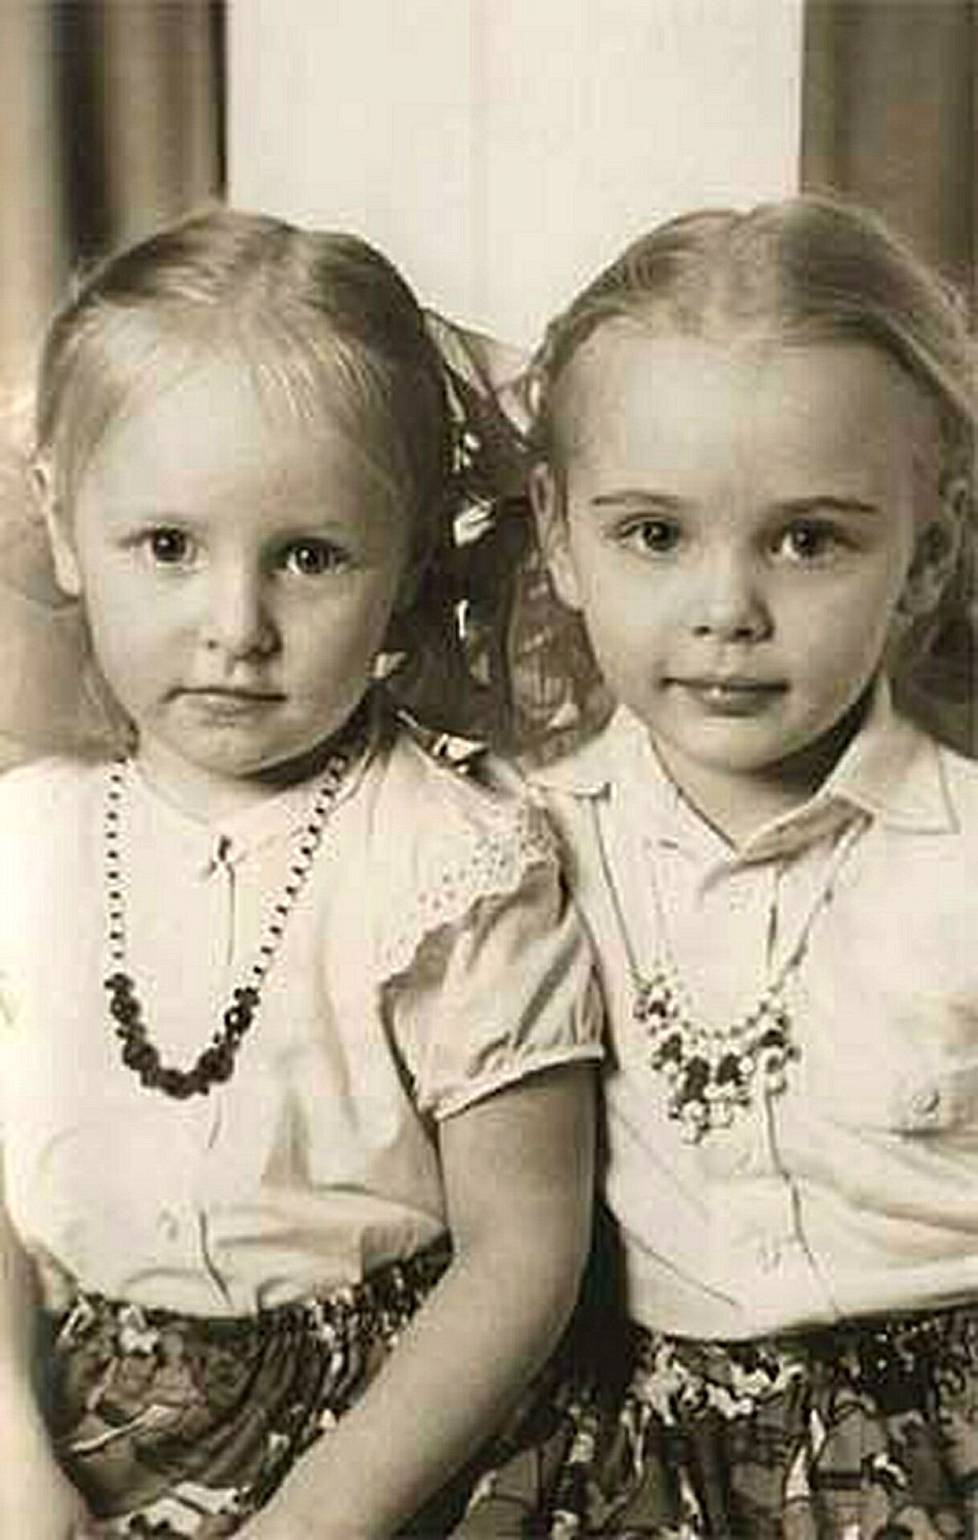 Putinin tyttäret Jekaterina ja Maria lapsina. Putinin entisen vaimon mukaan Putin oli tyttärilleen hyvä ja rakastava isä.